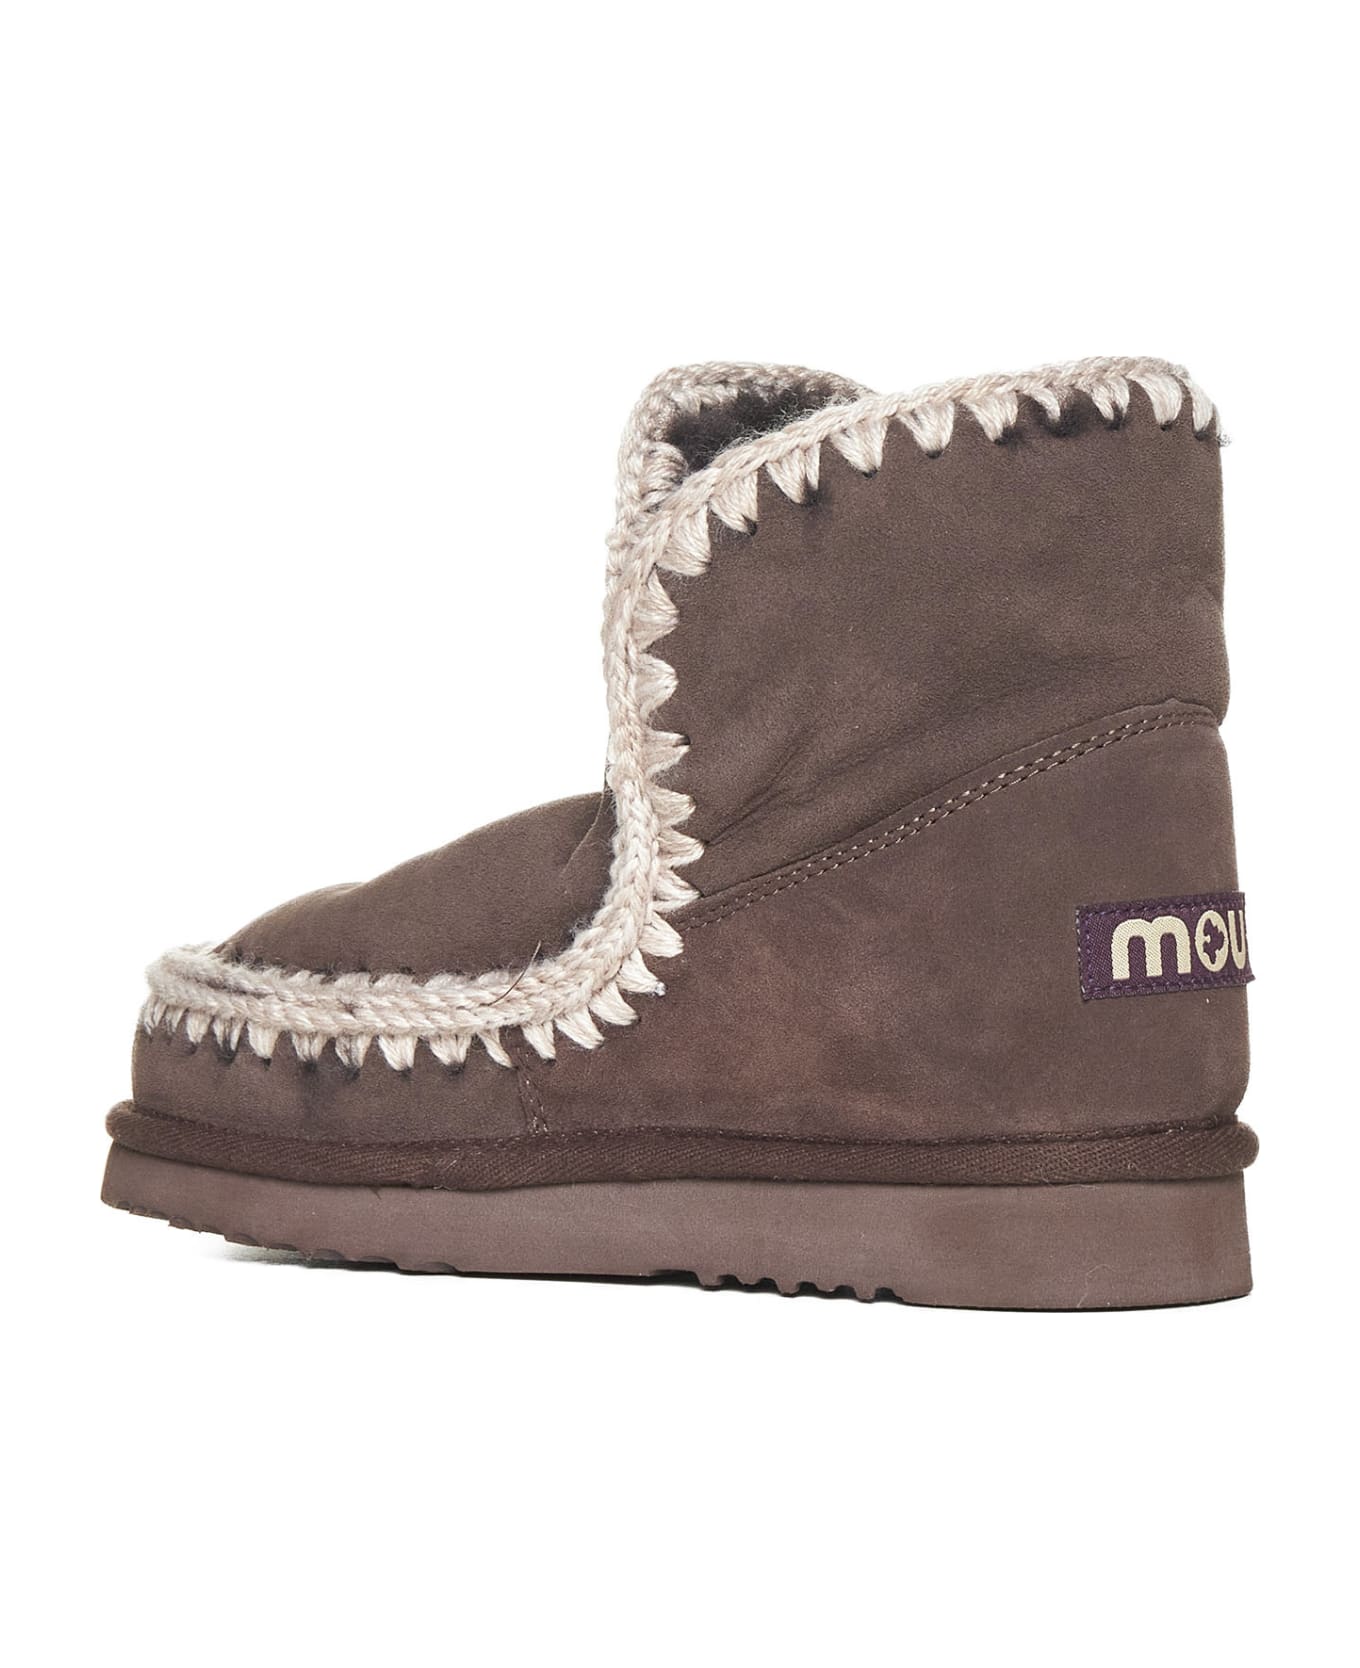 Mou Eskimo 18 Ankle Boots - Mocha